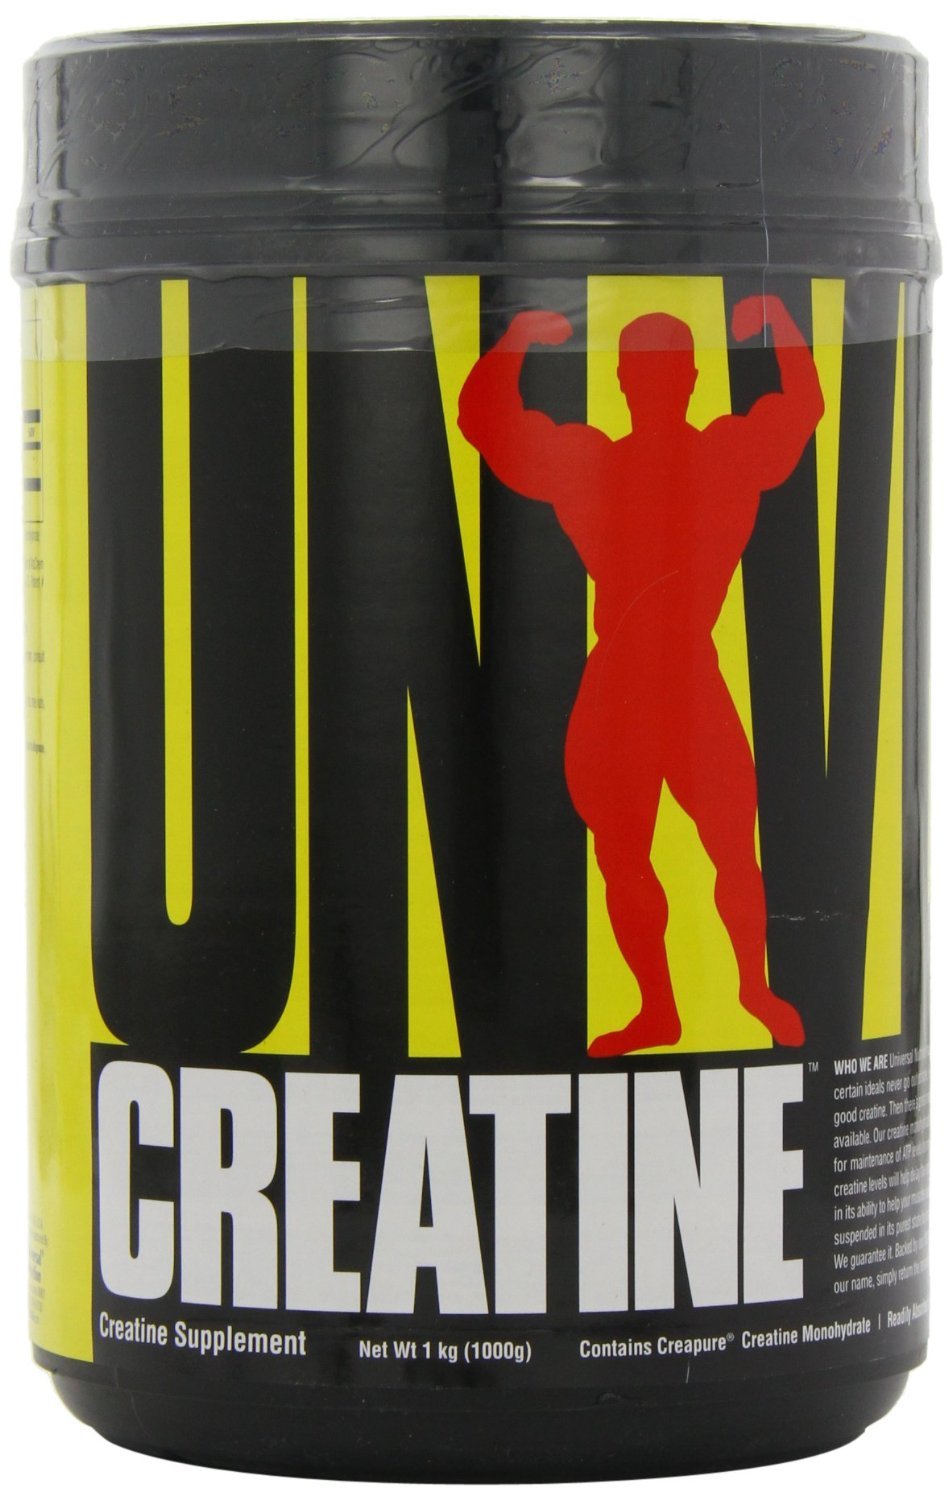 Creatine Monohydrate, 1000 г, Universal Nutrition. Креатин моногидрат. Набор массы Энергия и выносливость Увеличение силы 